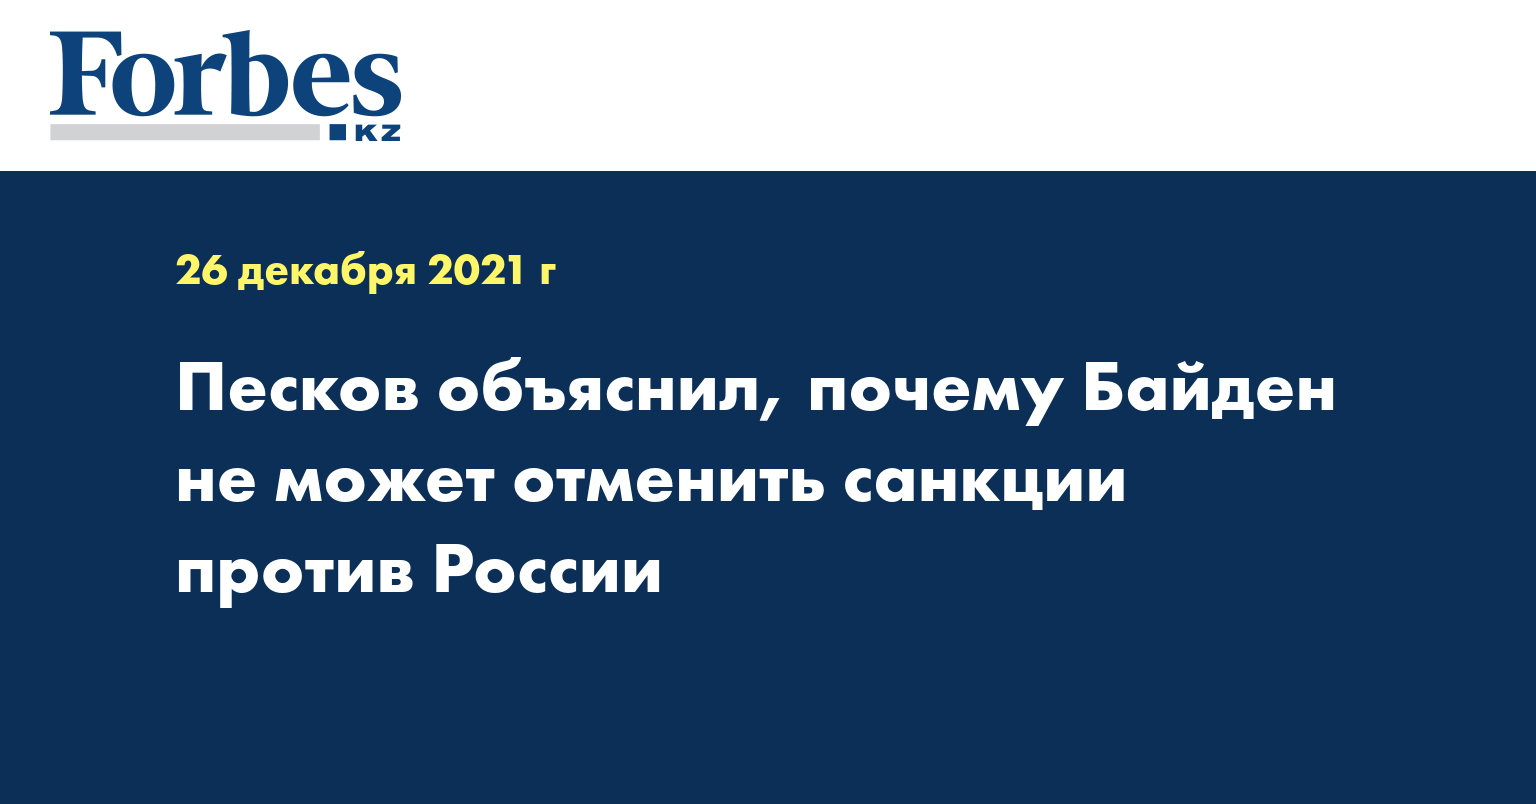 Песков объяснил, почему Байден не может отменить санкции против России